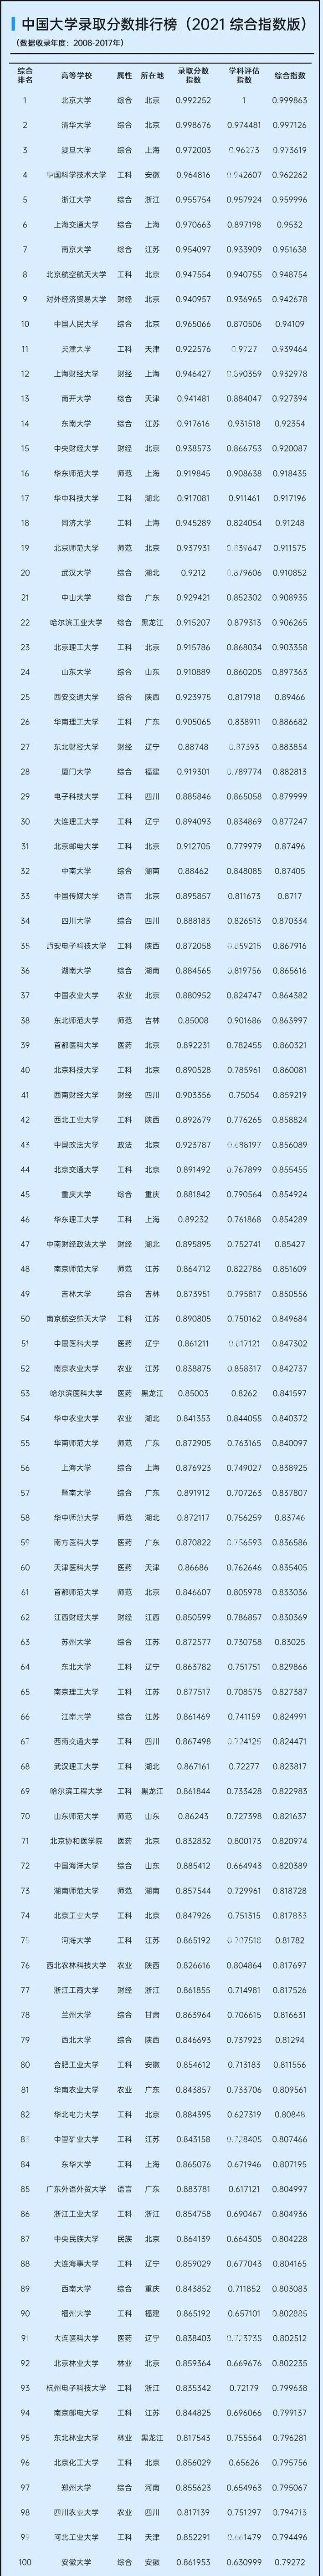 2021中国大学排行榜_2021年全国31地区排名,根据大学实力划分,准确而不偏激